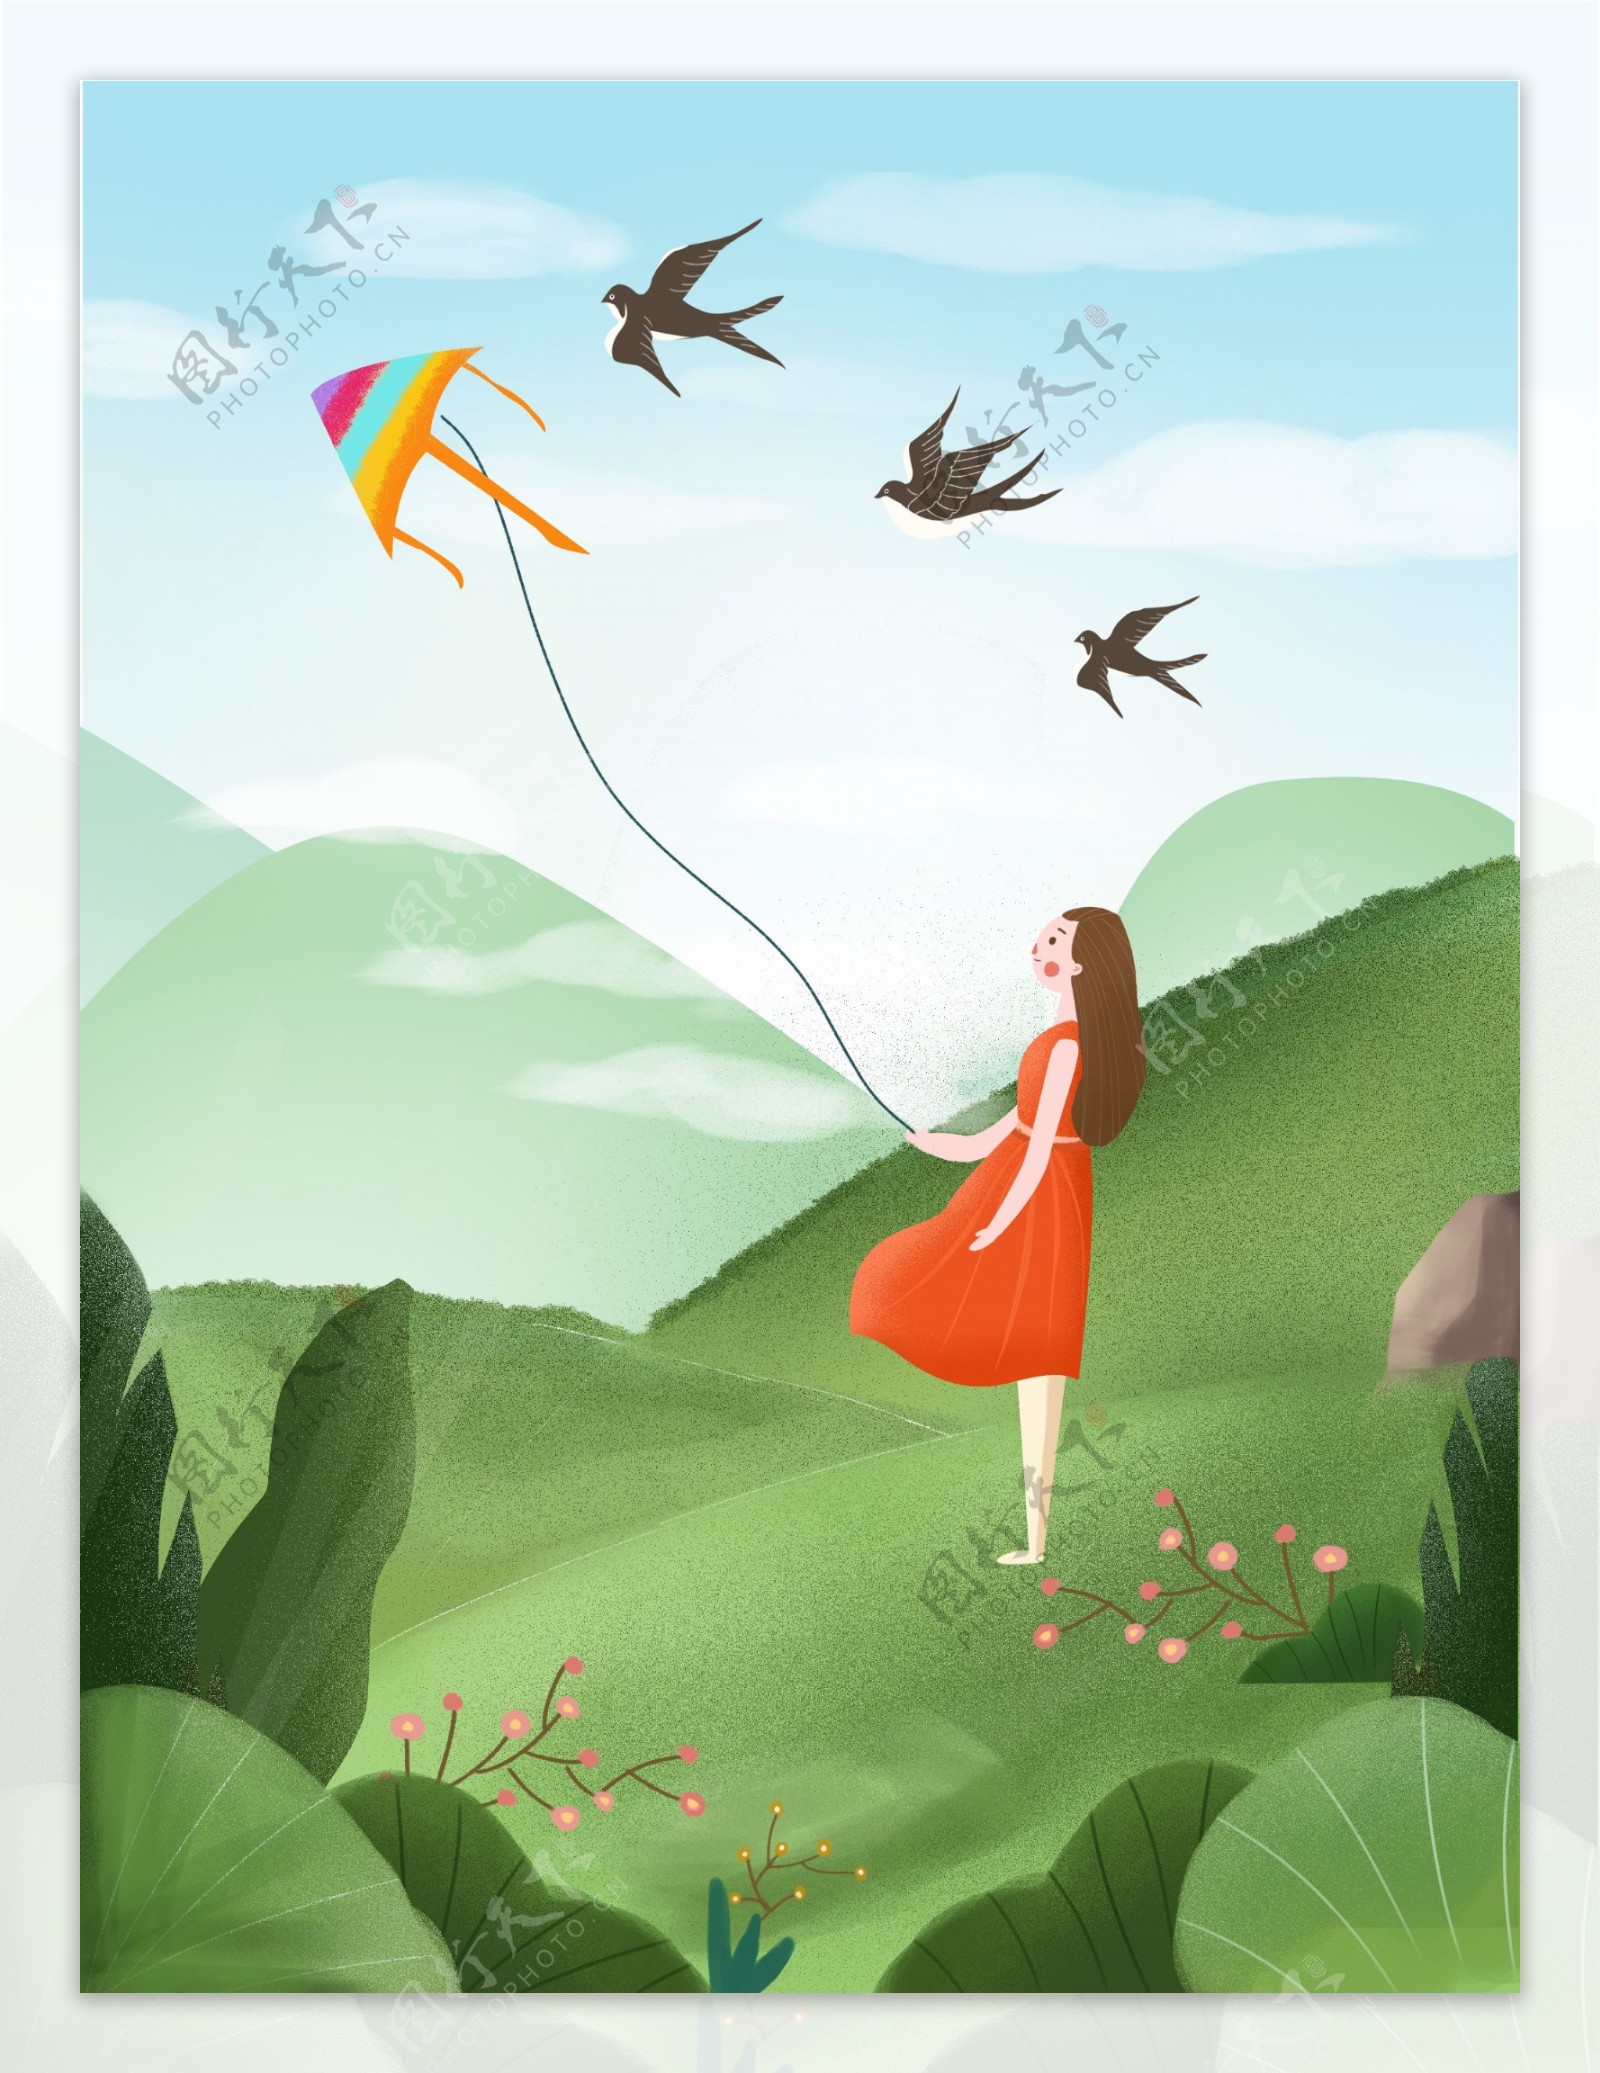 原创手绘插画少女踏青放风筝背景设计